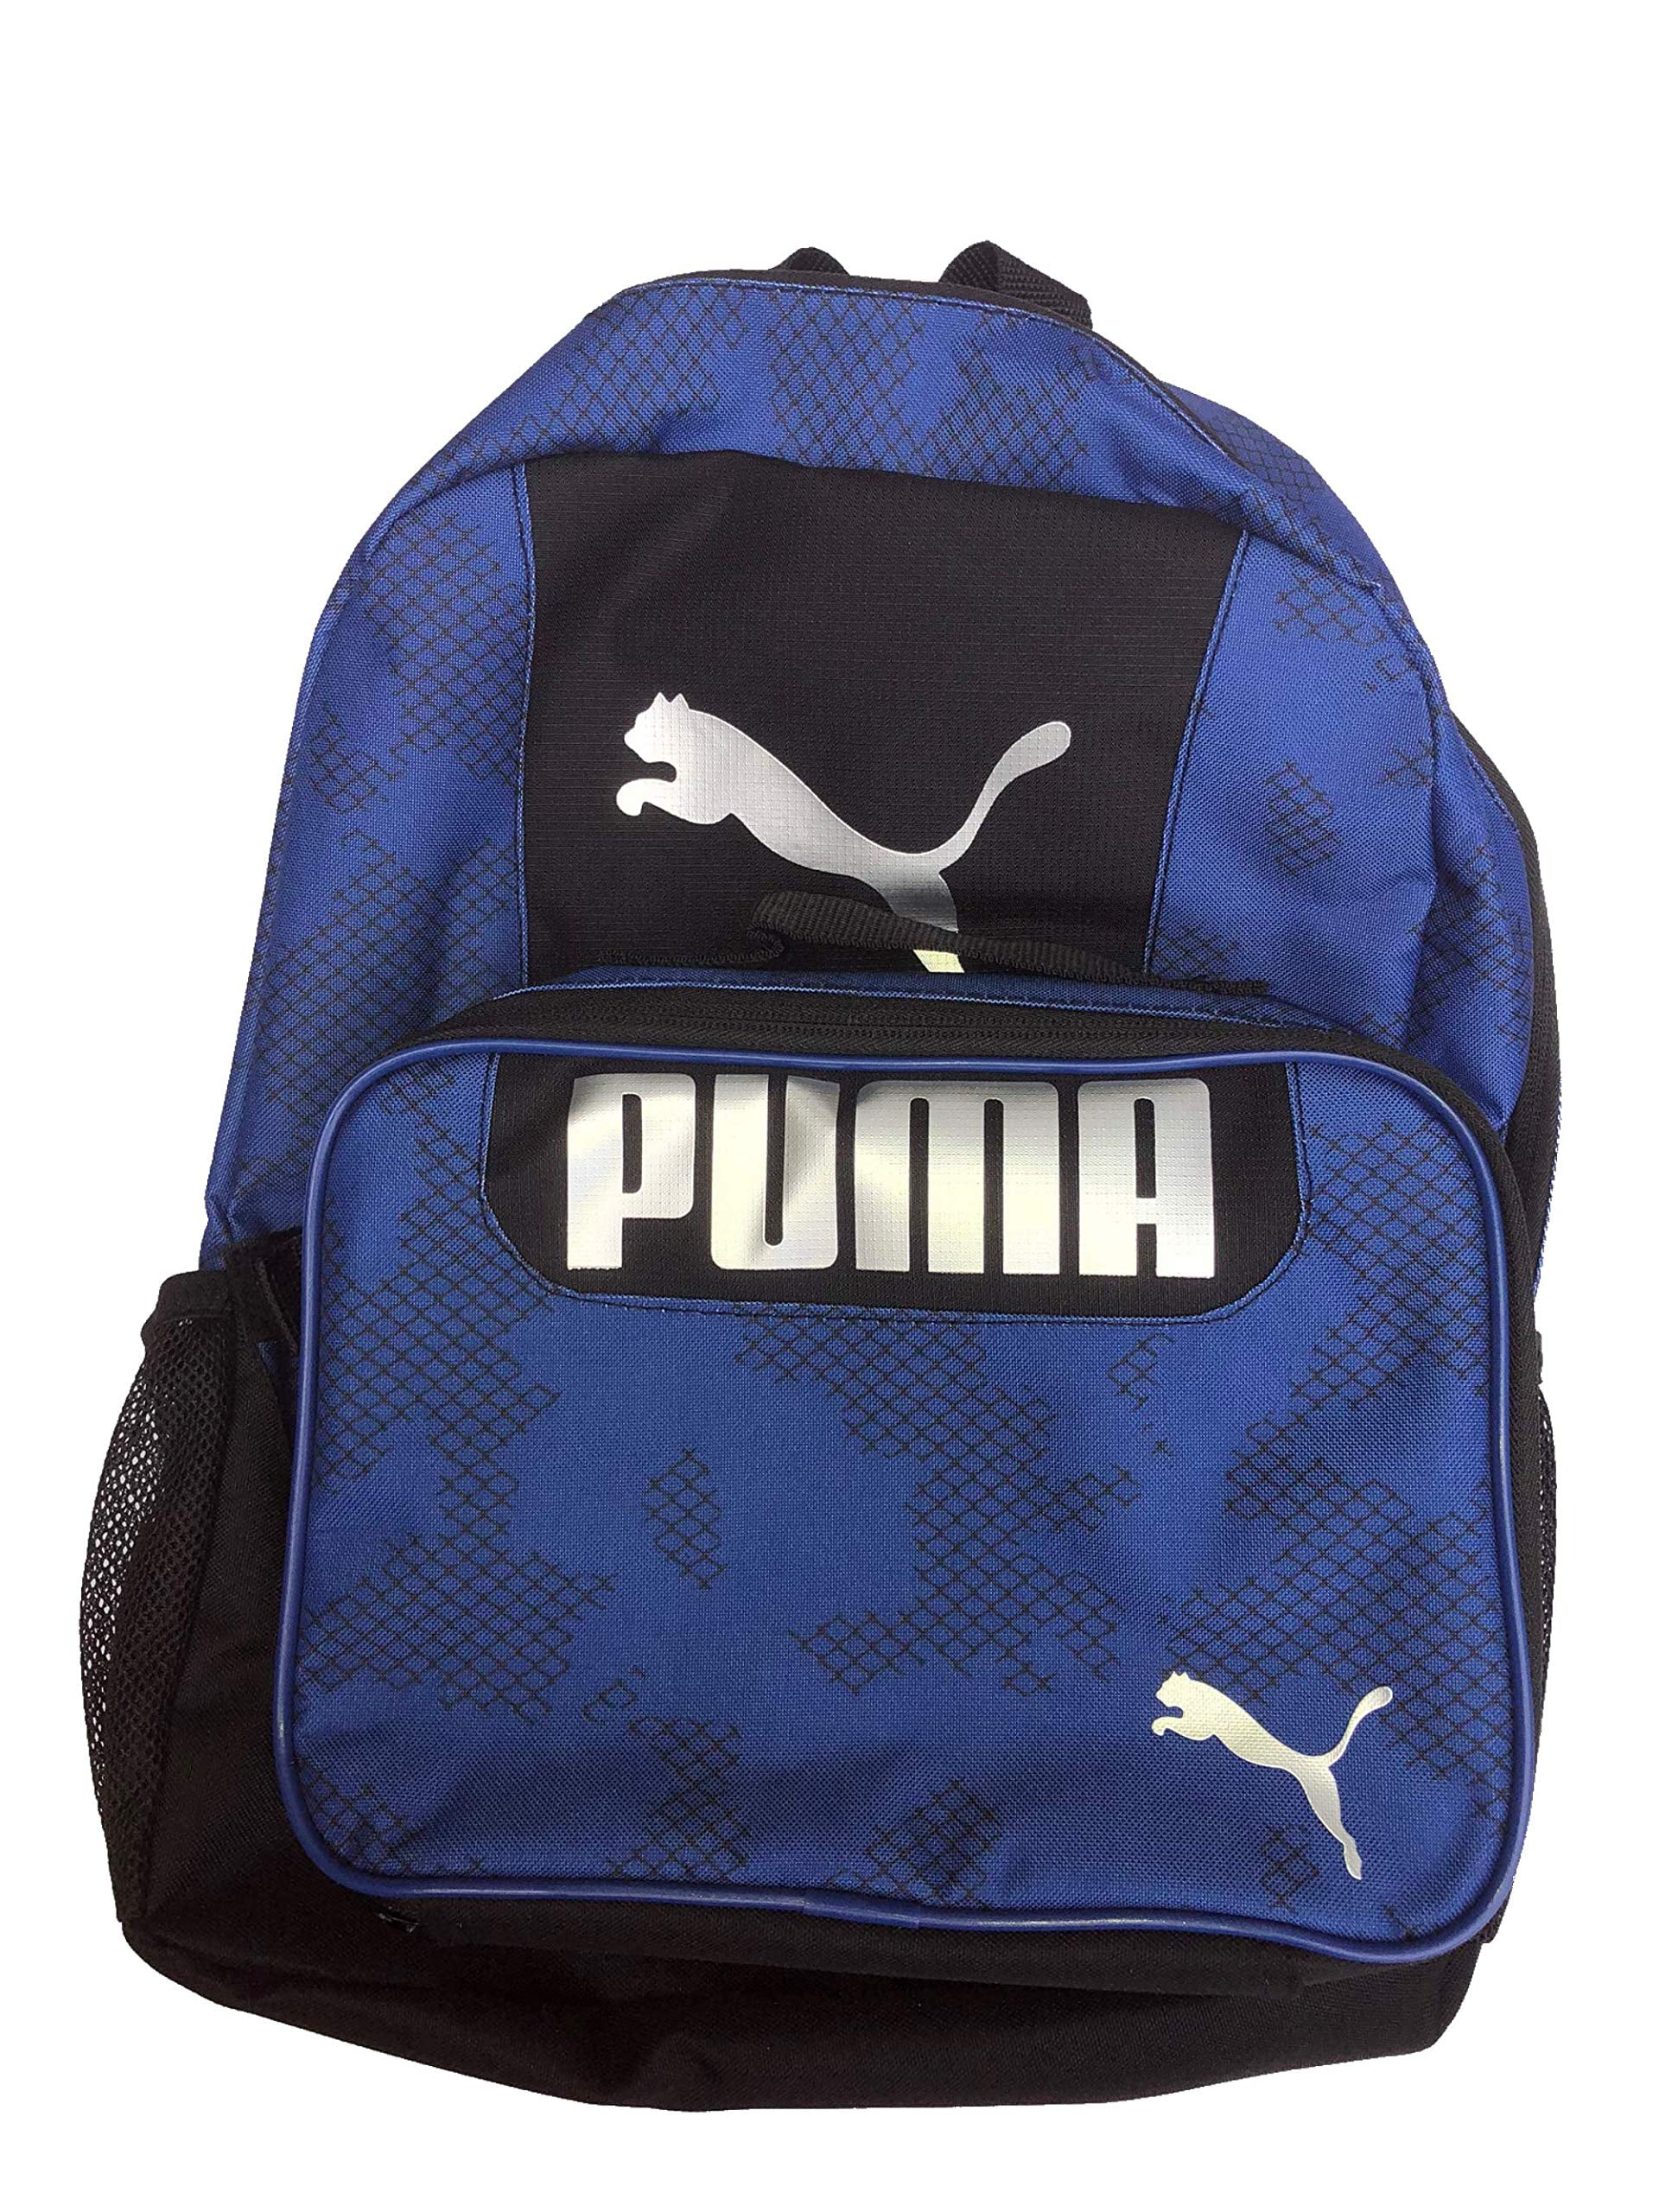 puma lunch bag